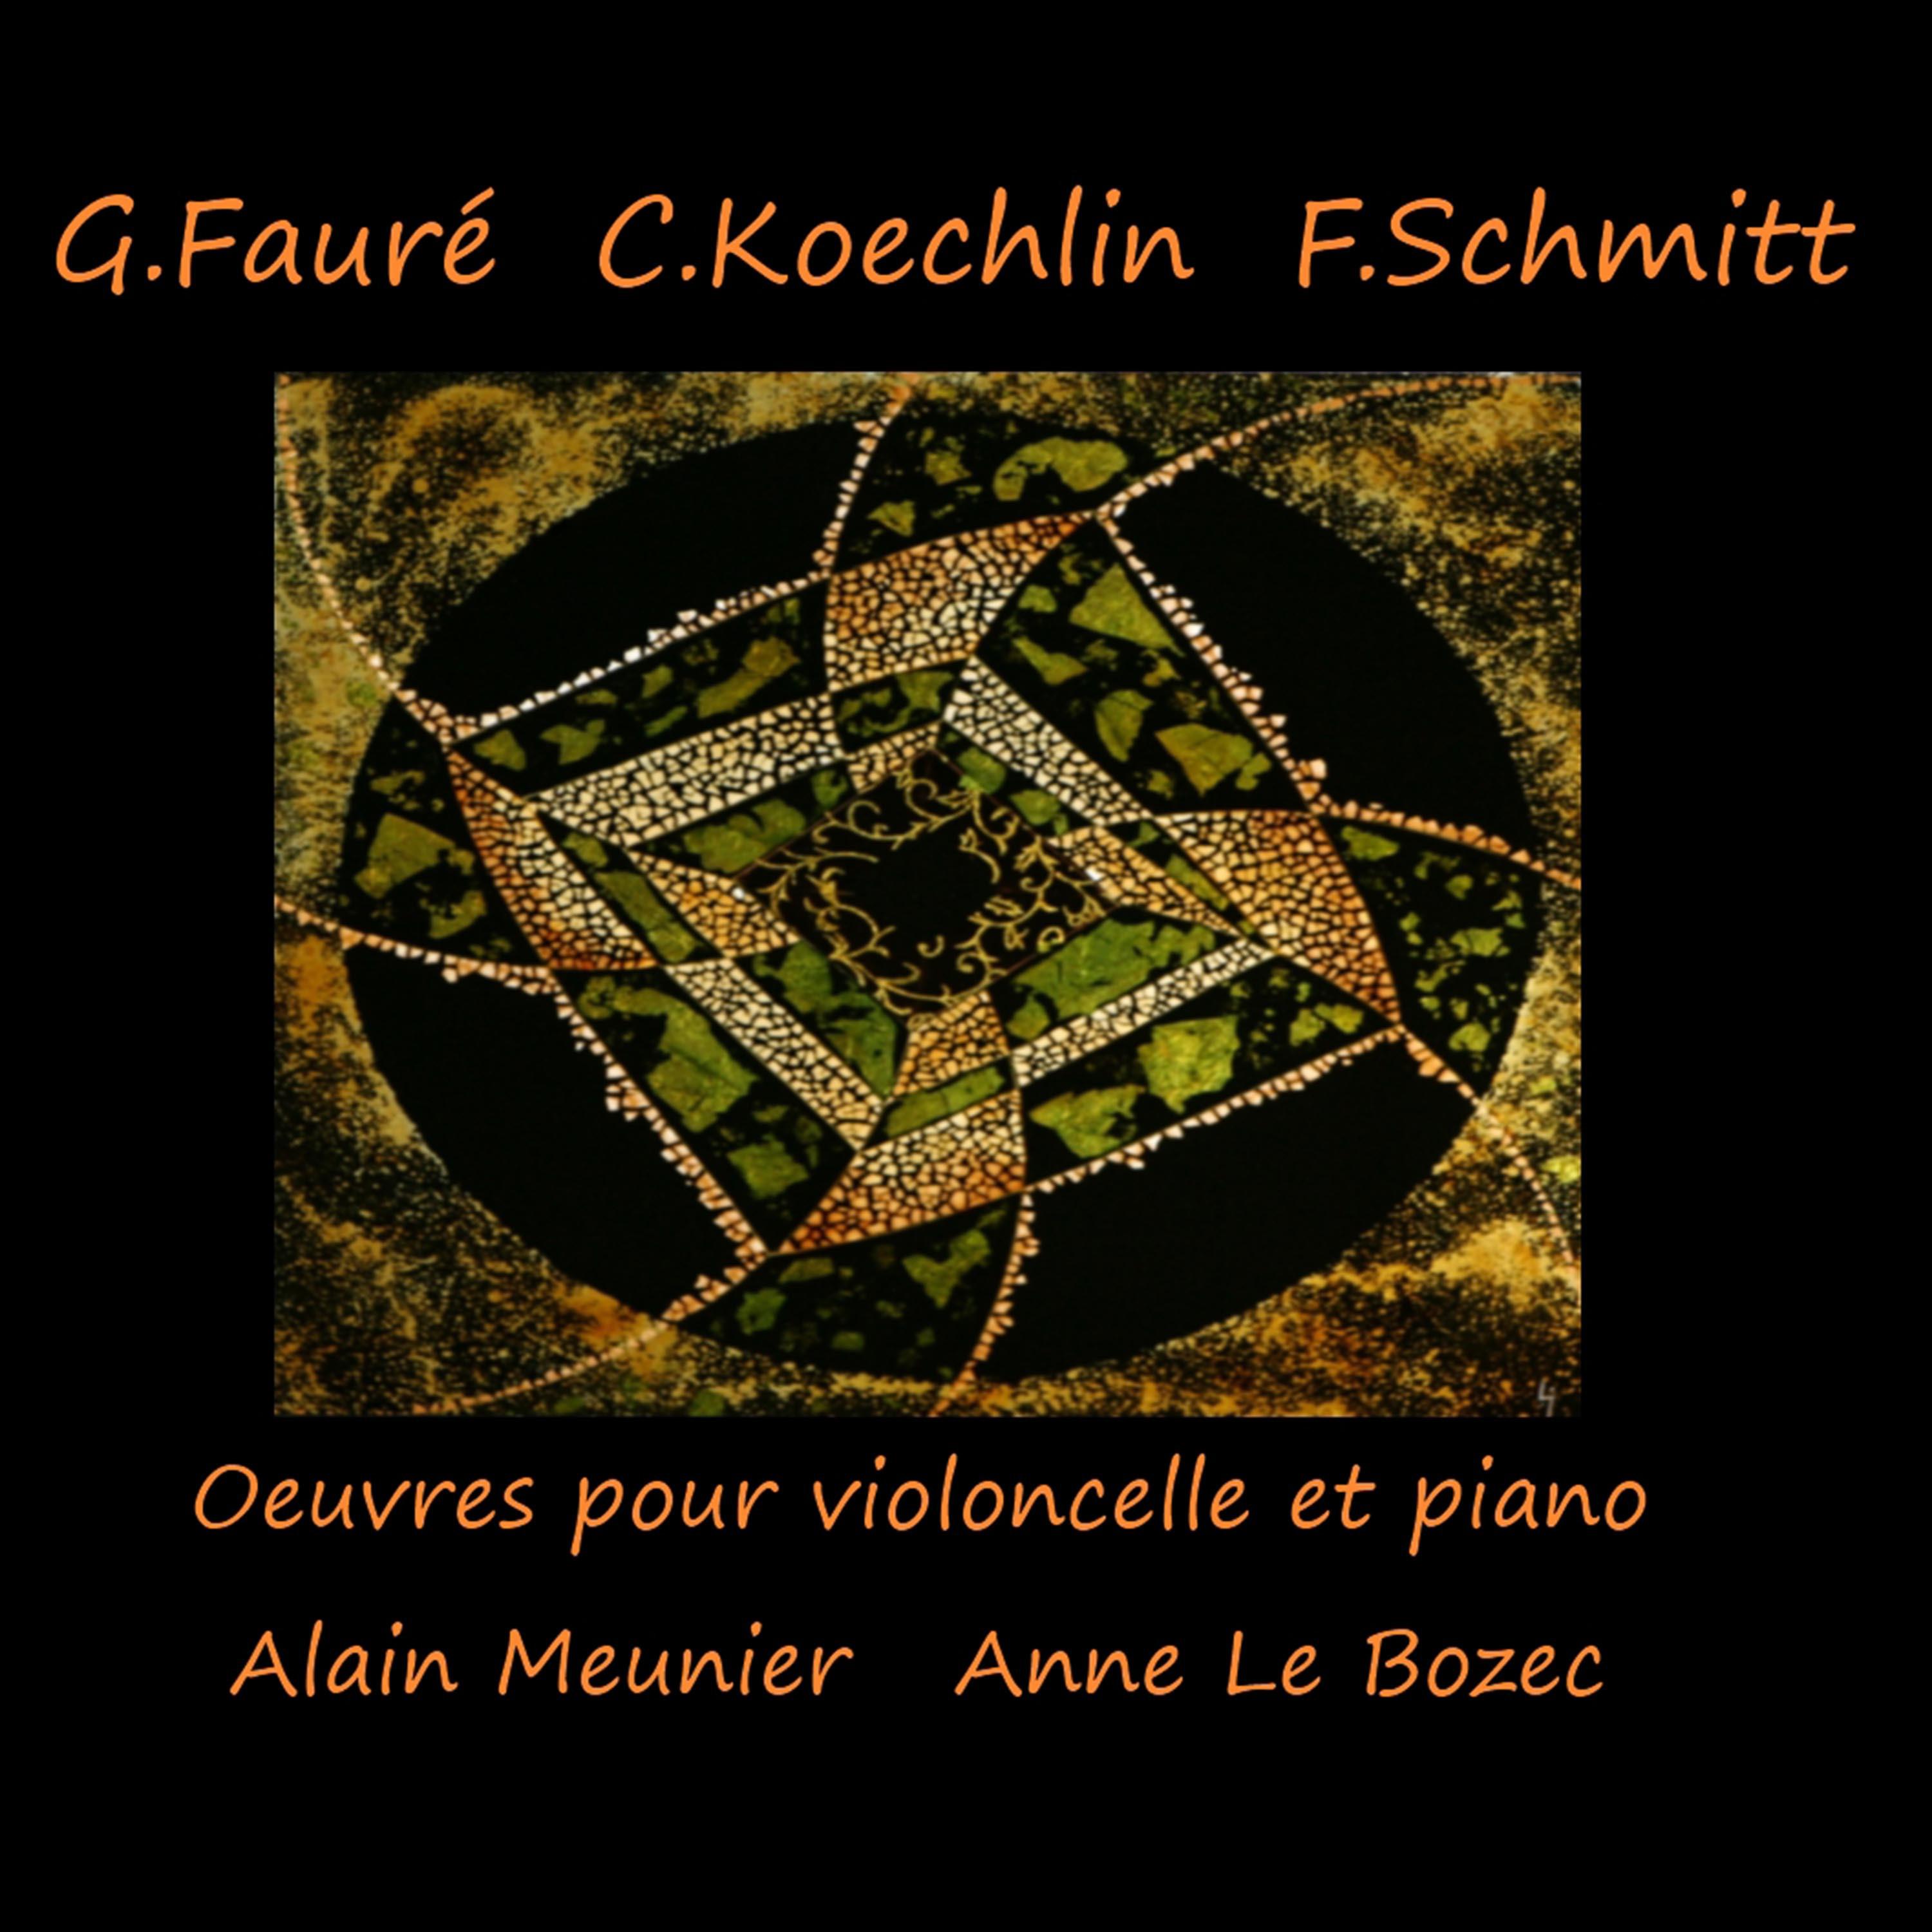 Sonate pour violoncelle et piano No. 1 en Re Mineur, Op. 119: II. Andante